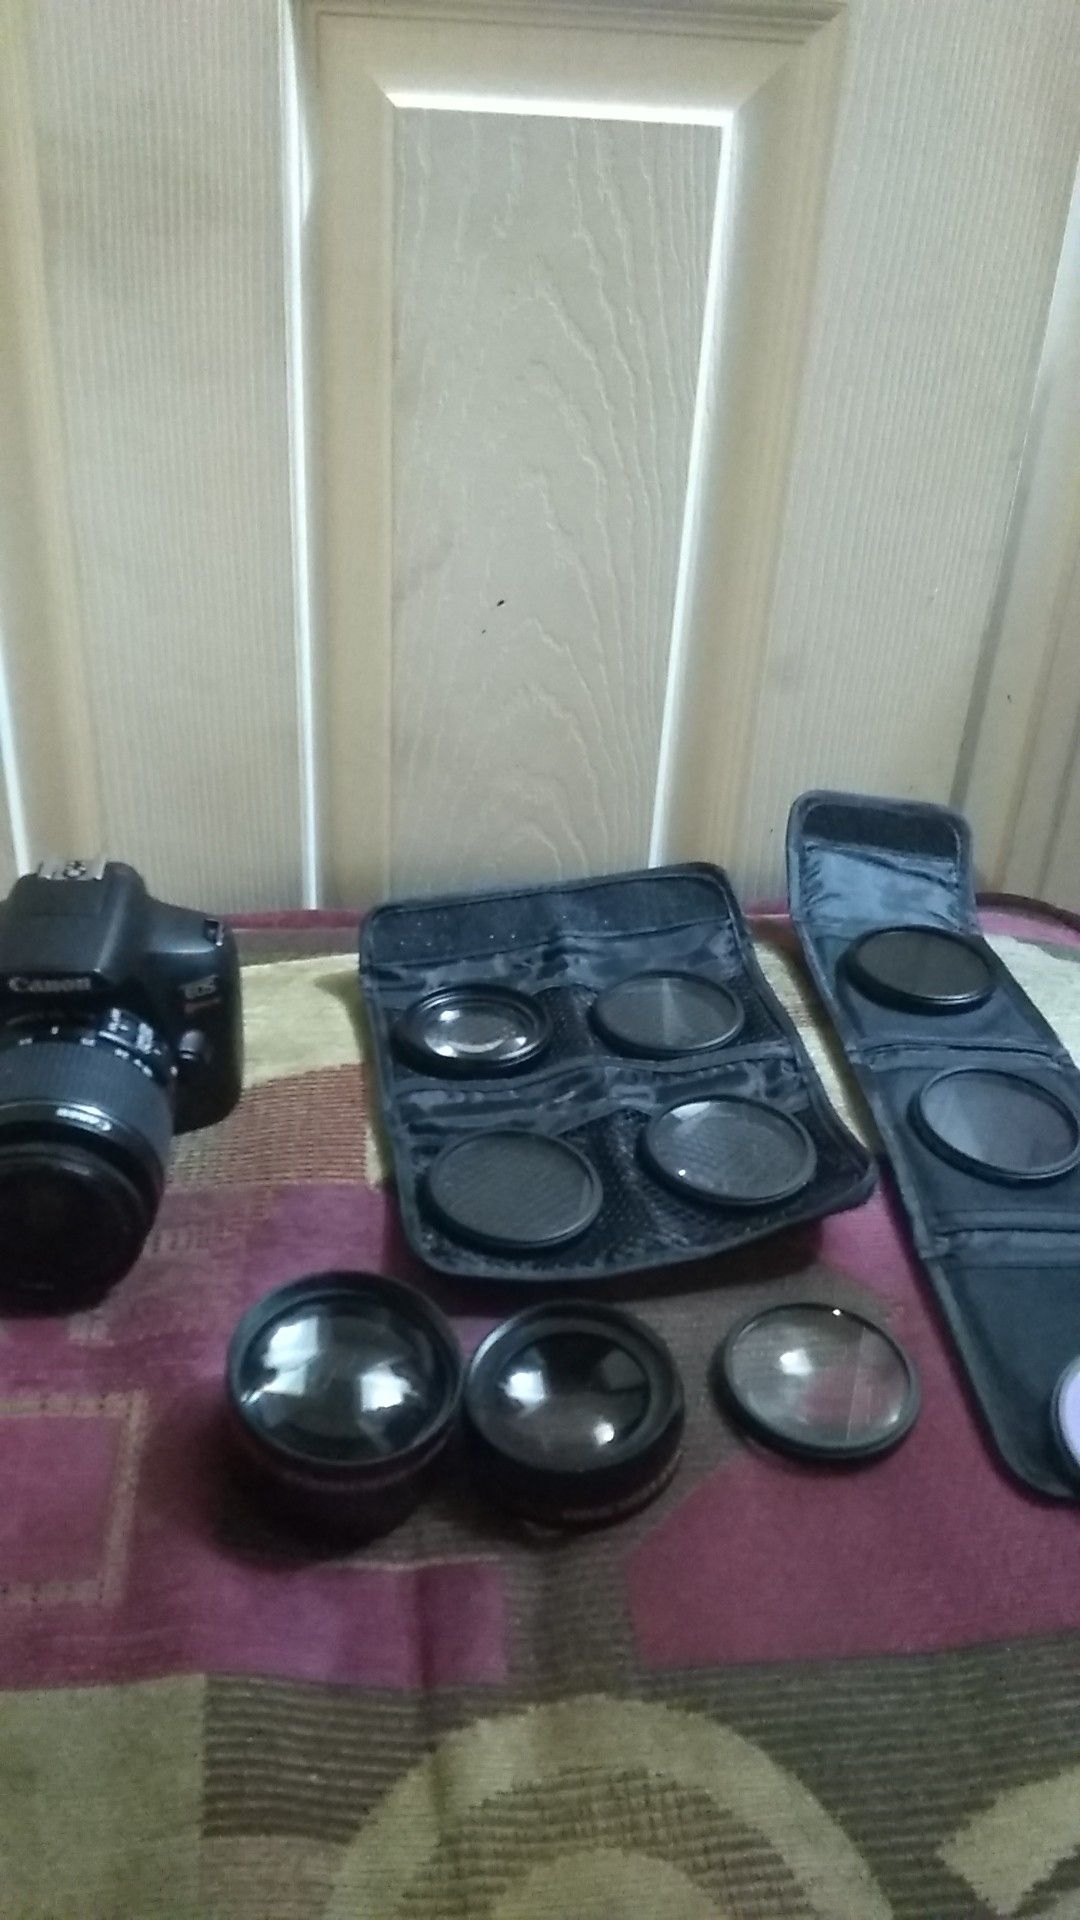 Canon rebel t6 & lenses kit